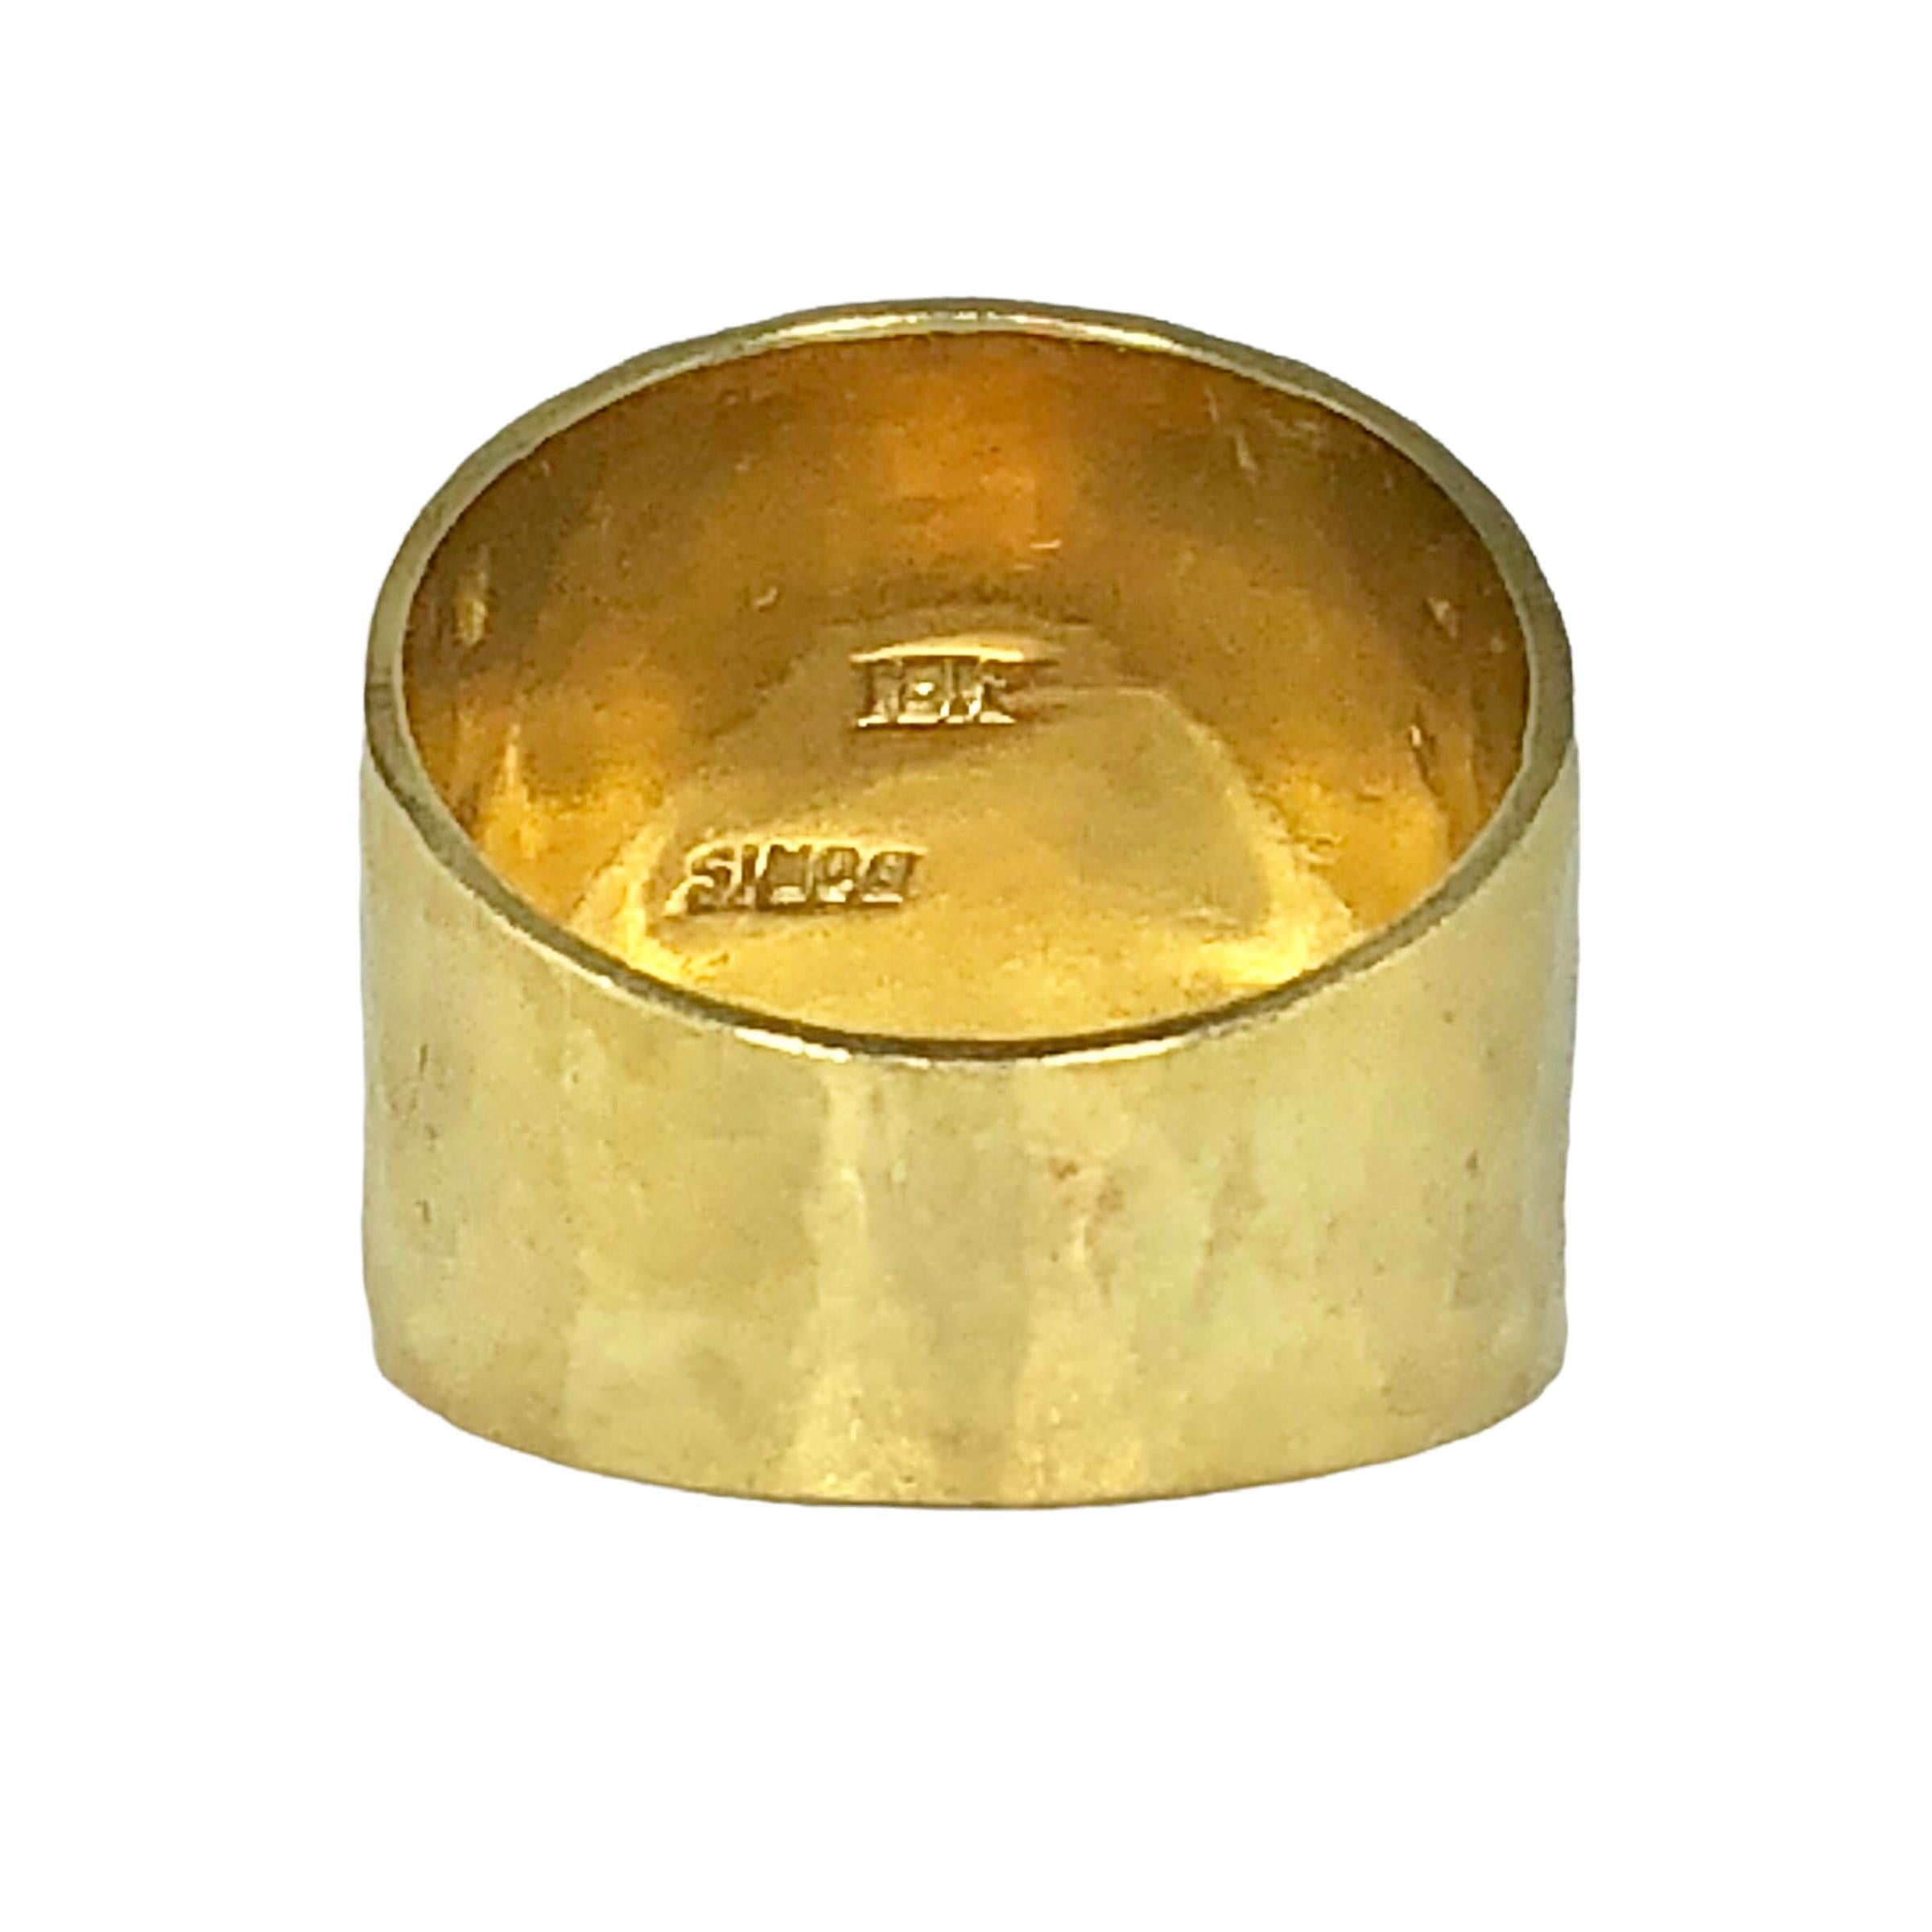 18k gold cigar band ring